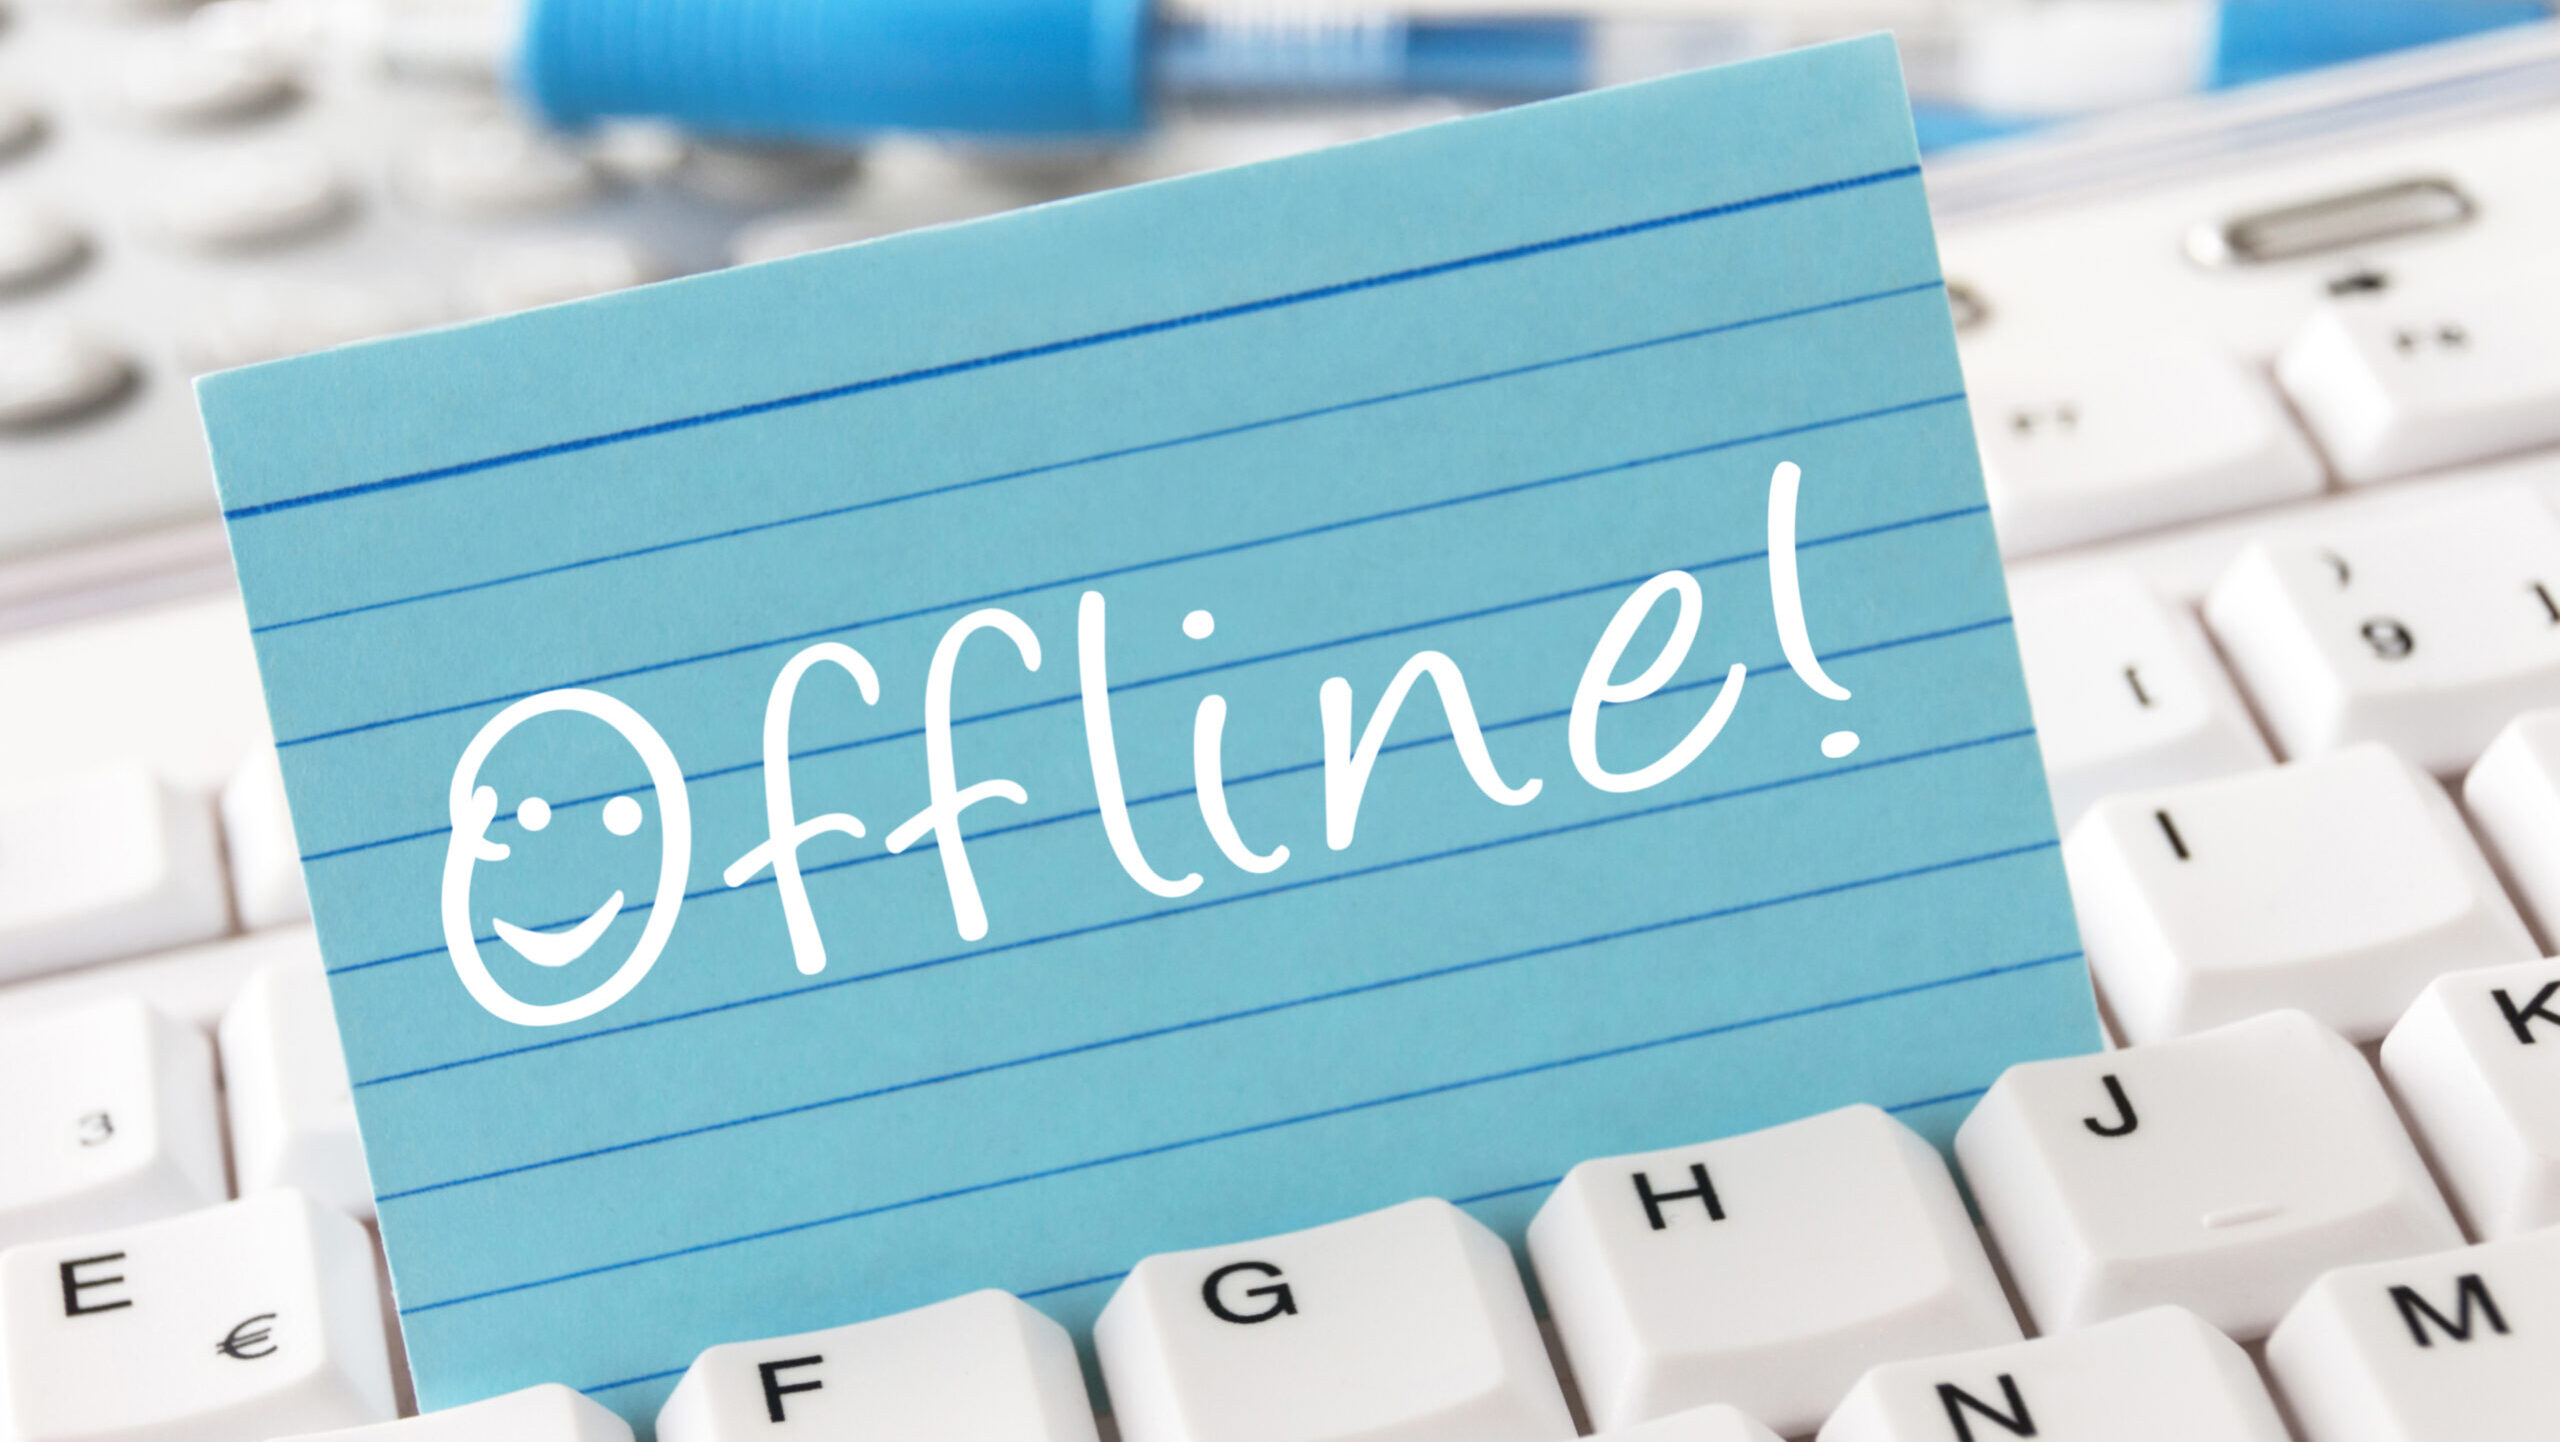 8 einfach Tricks für Digital Detox: “Ich bin dann mal offline!”